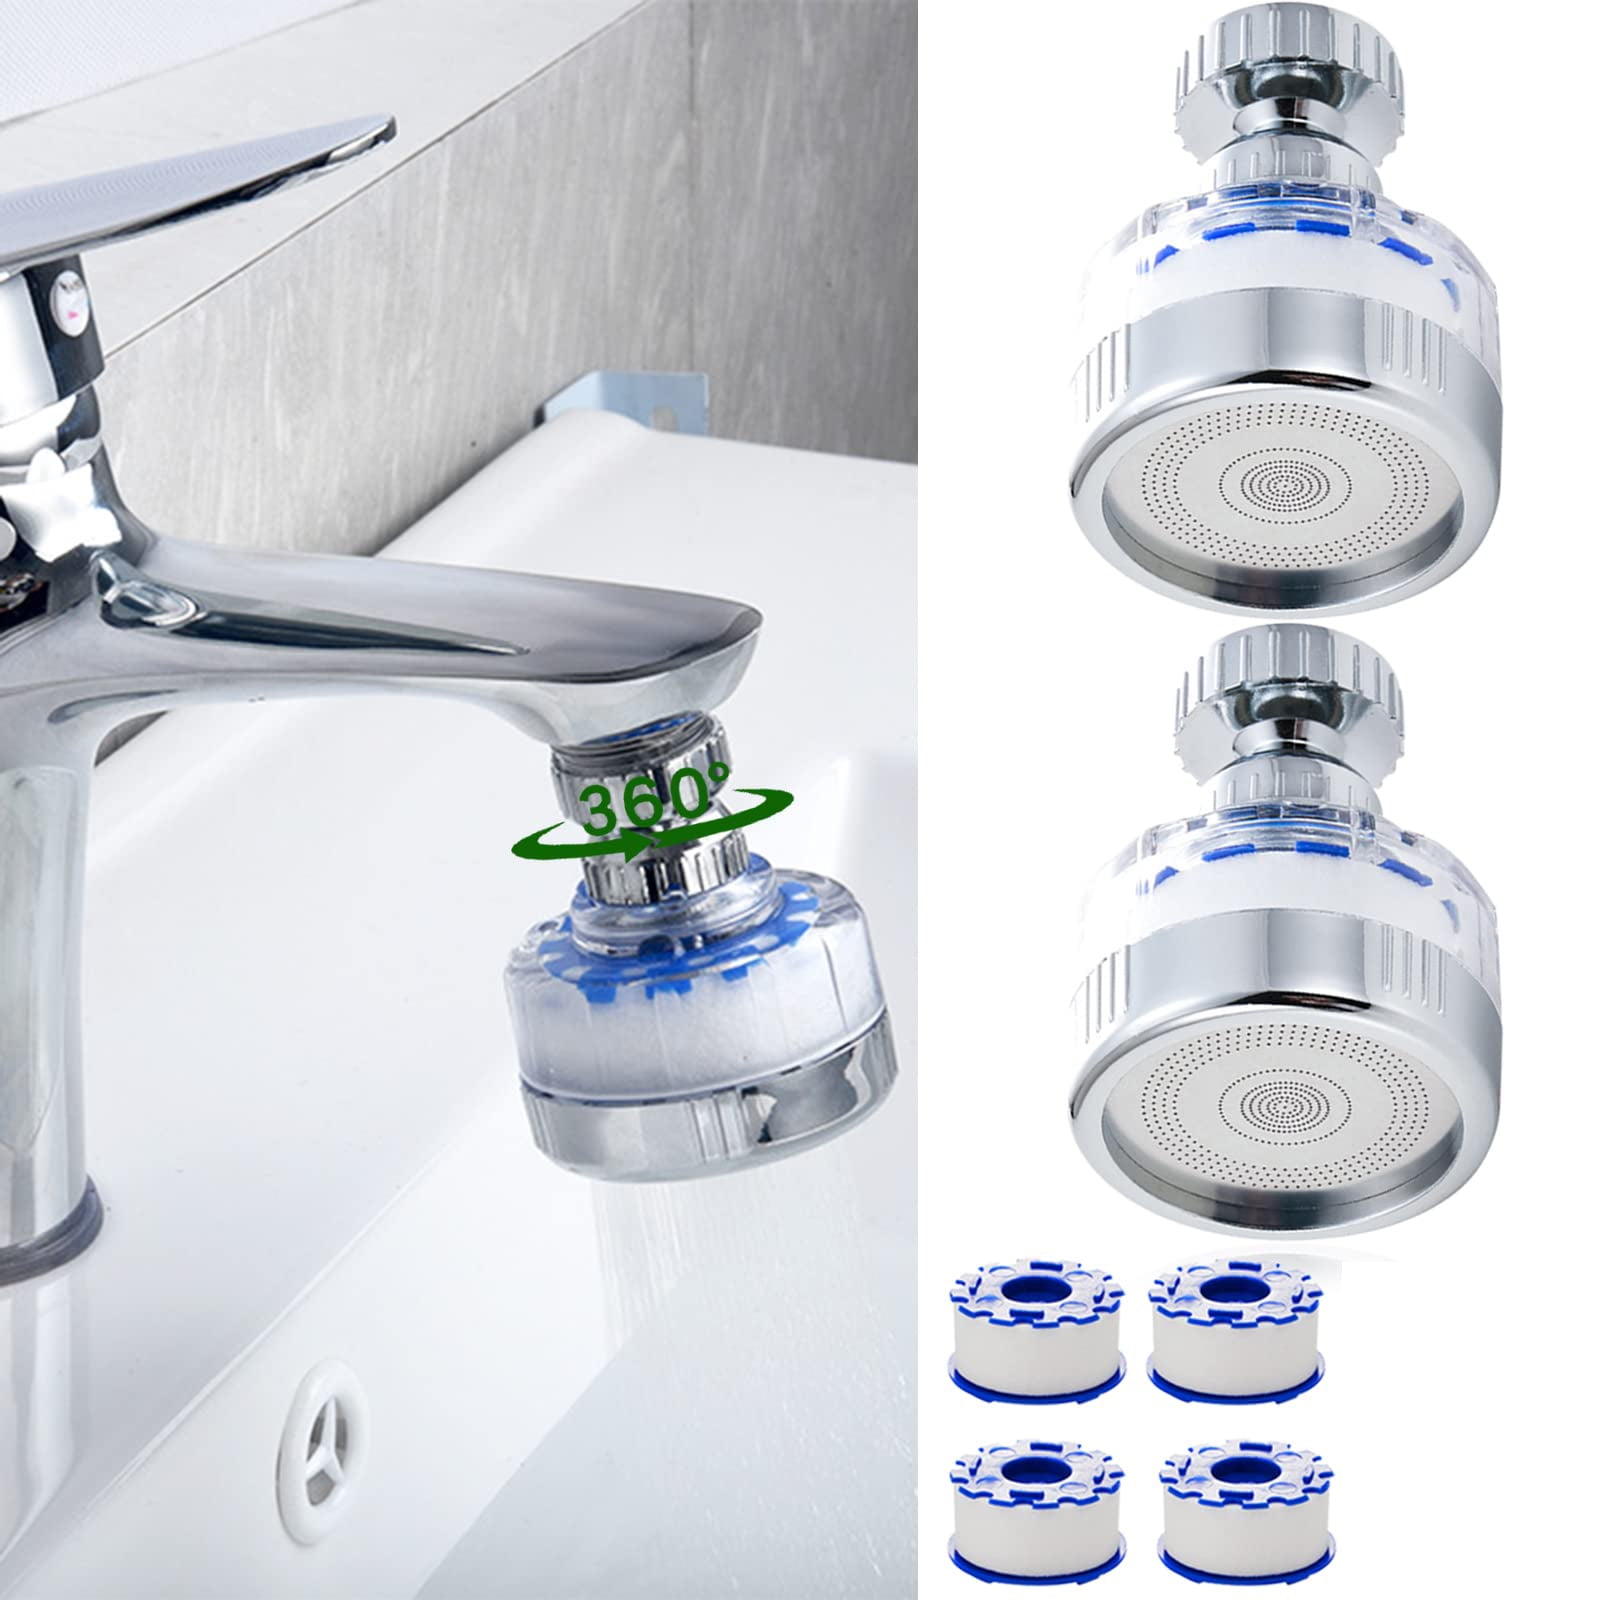 Brita Total 360 Under Sink Kitchen & Bathroom Water Filtration